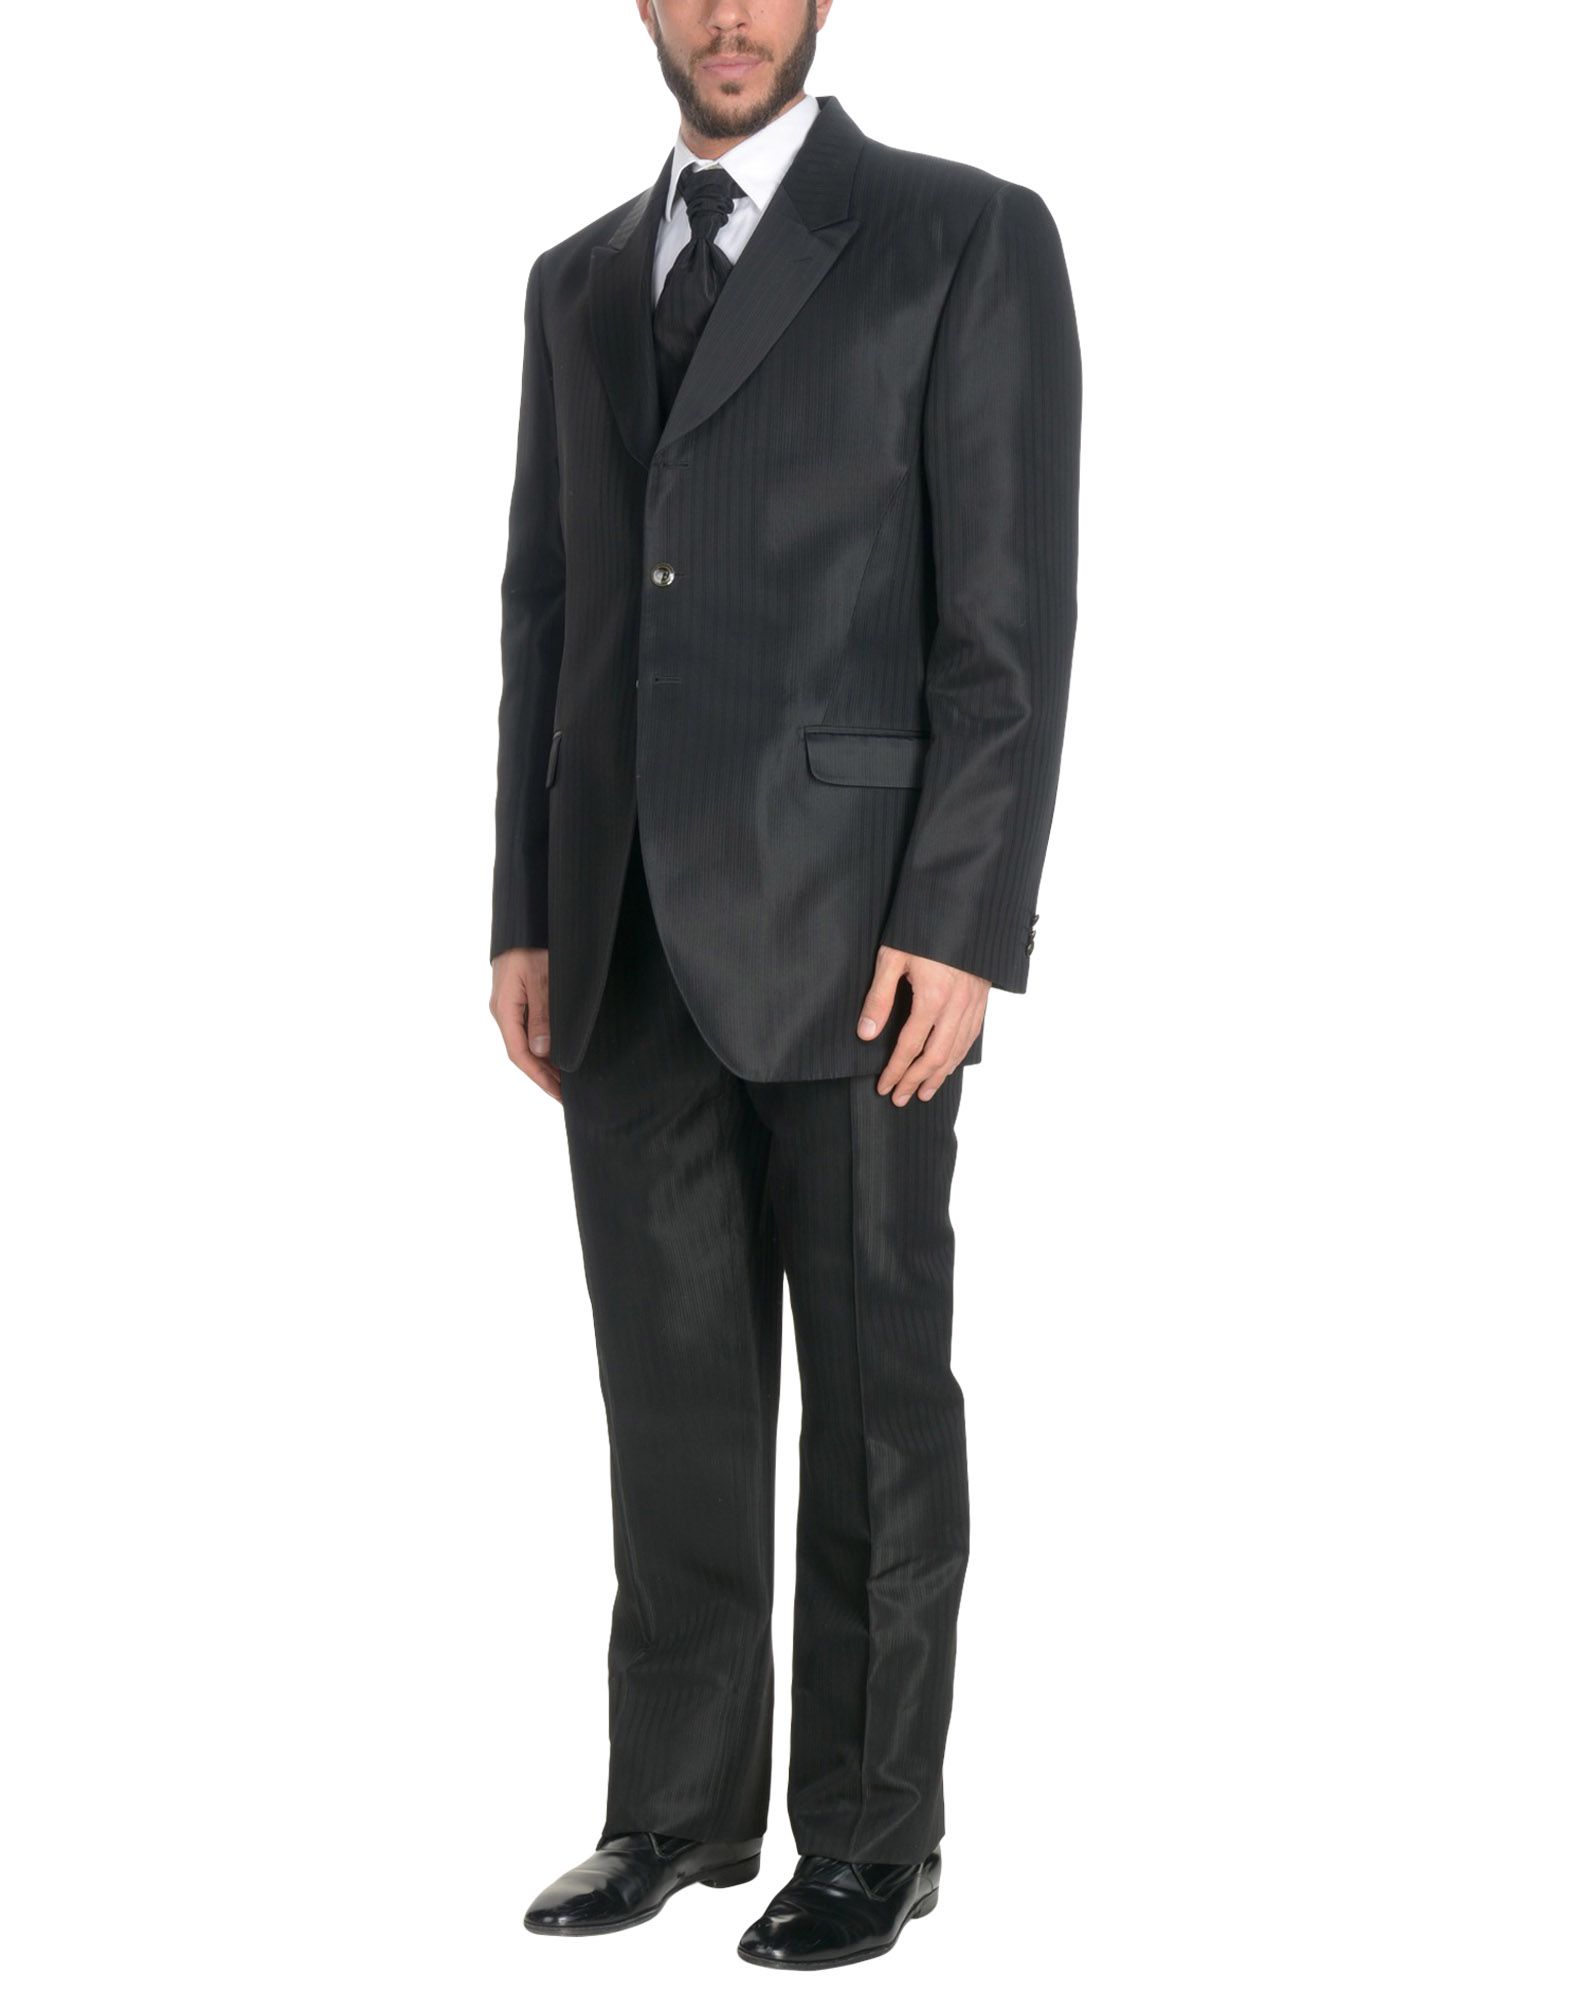 《送料無料》CARLO PIGNATELLI CERIMONIA メンズ スーツ ブラック 60 アセテート 100%